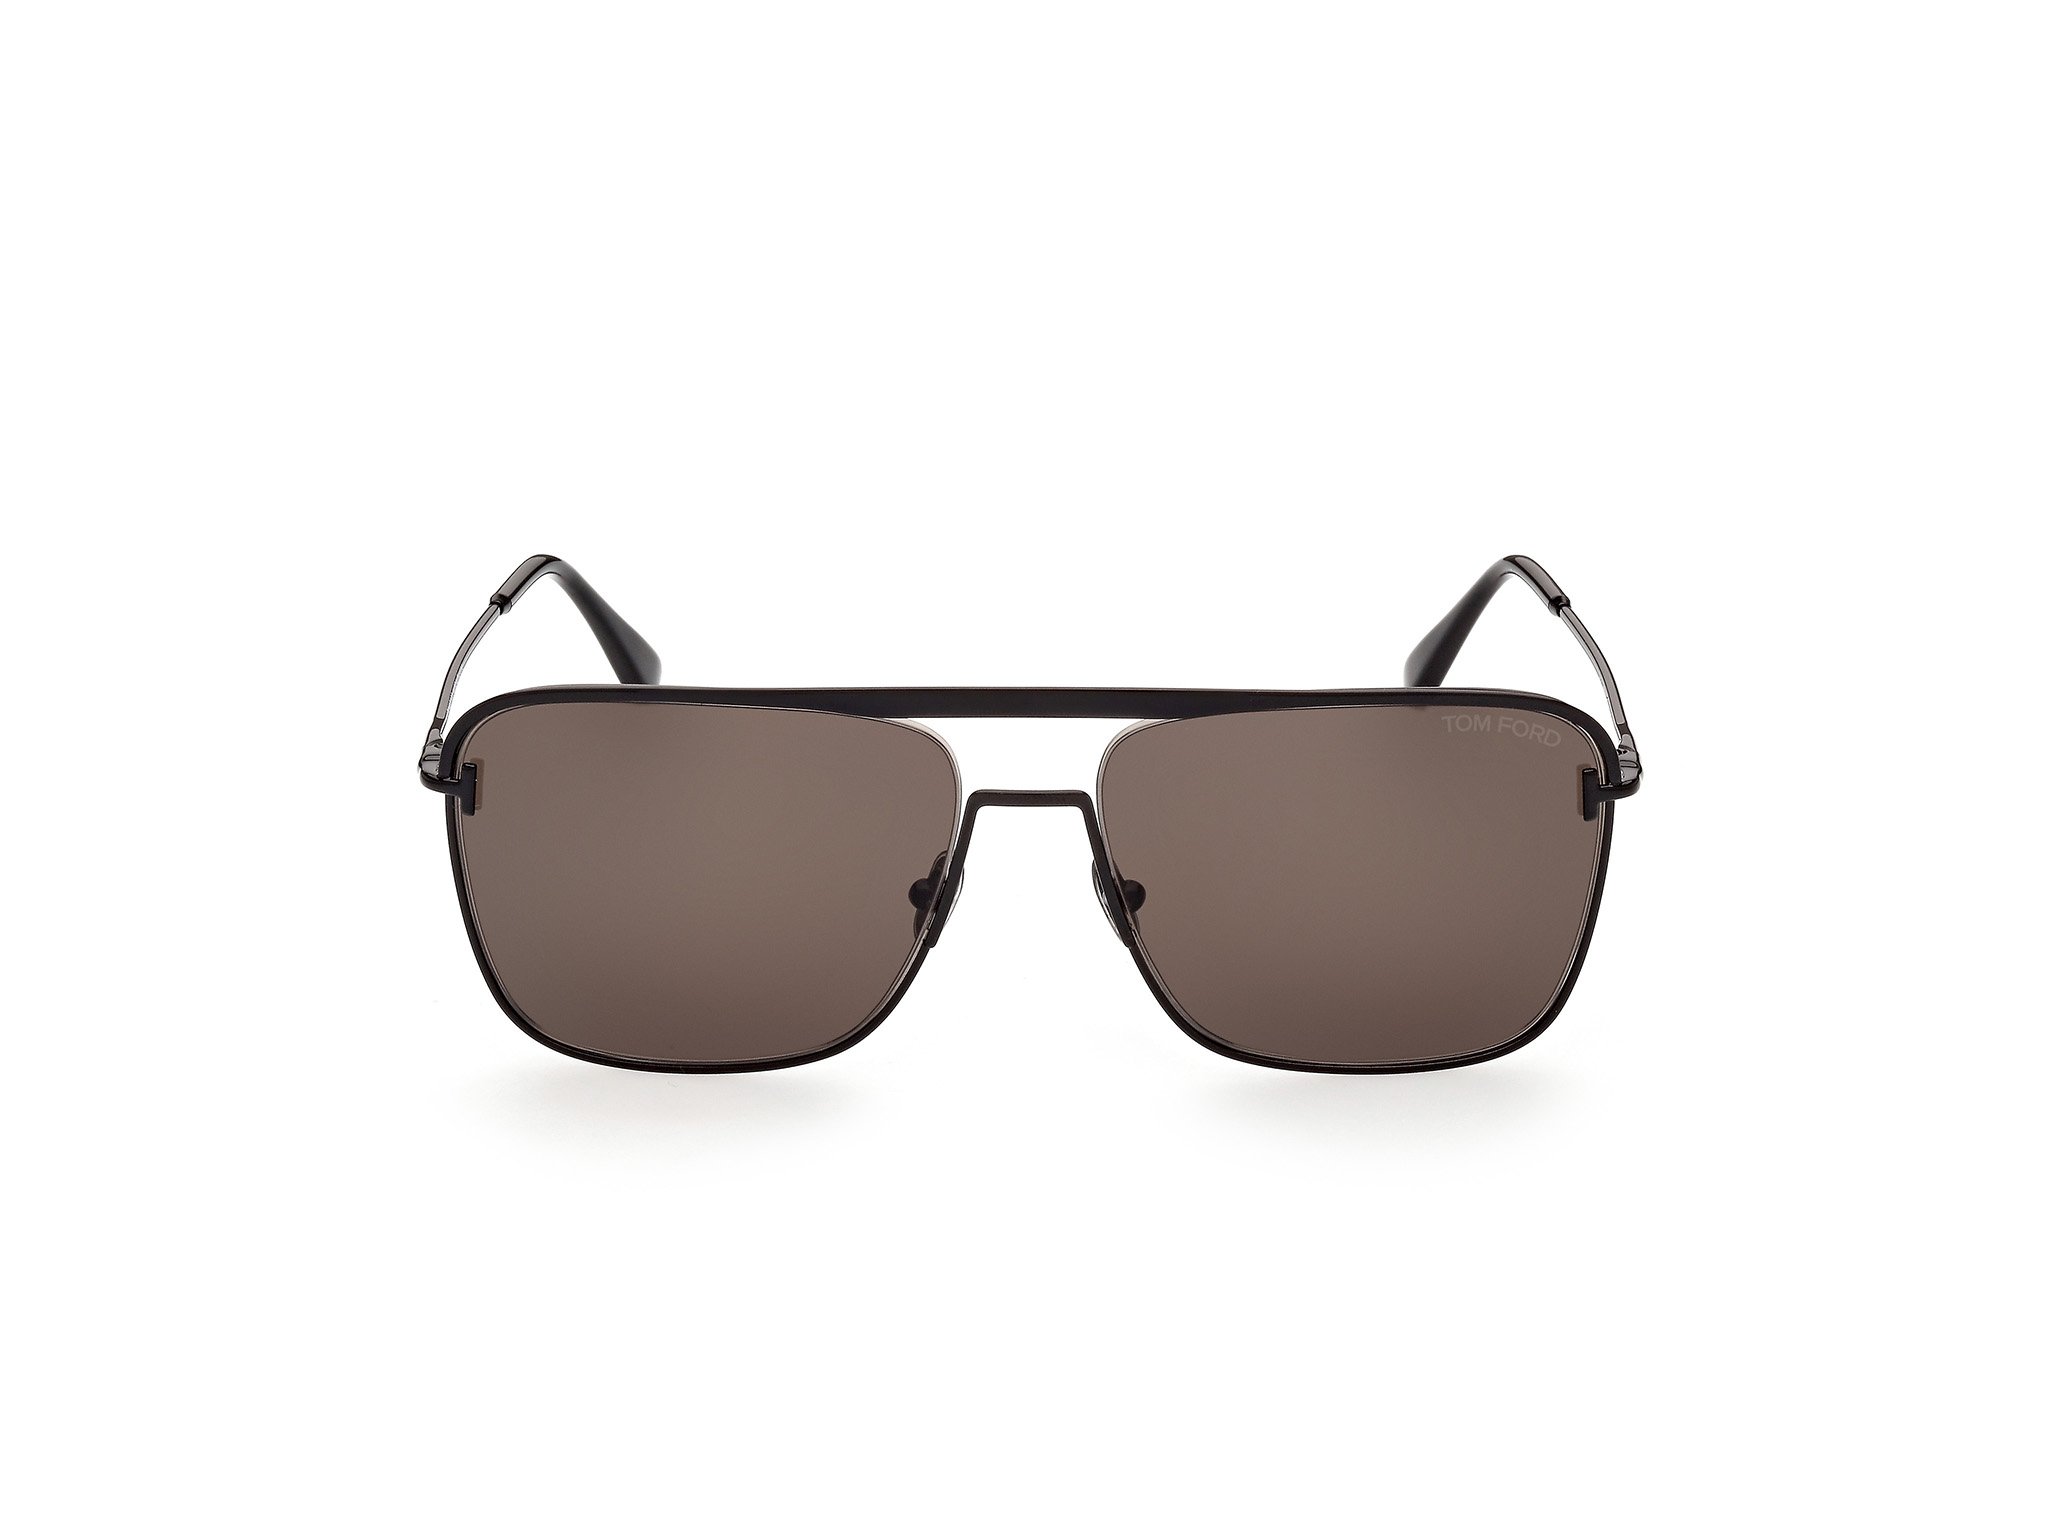 Das Bild zeigt die Sonnenbrille Nolan FT0925 von der Marke Tom Ford in schwarz frontal